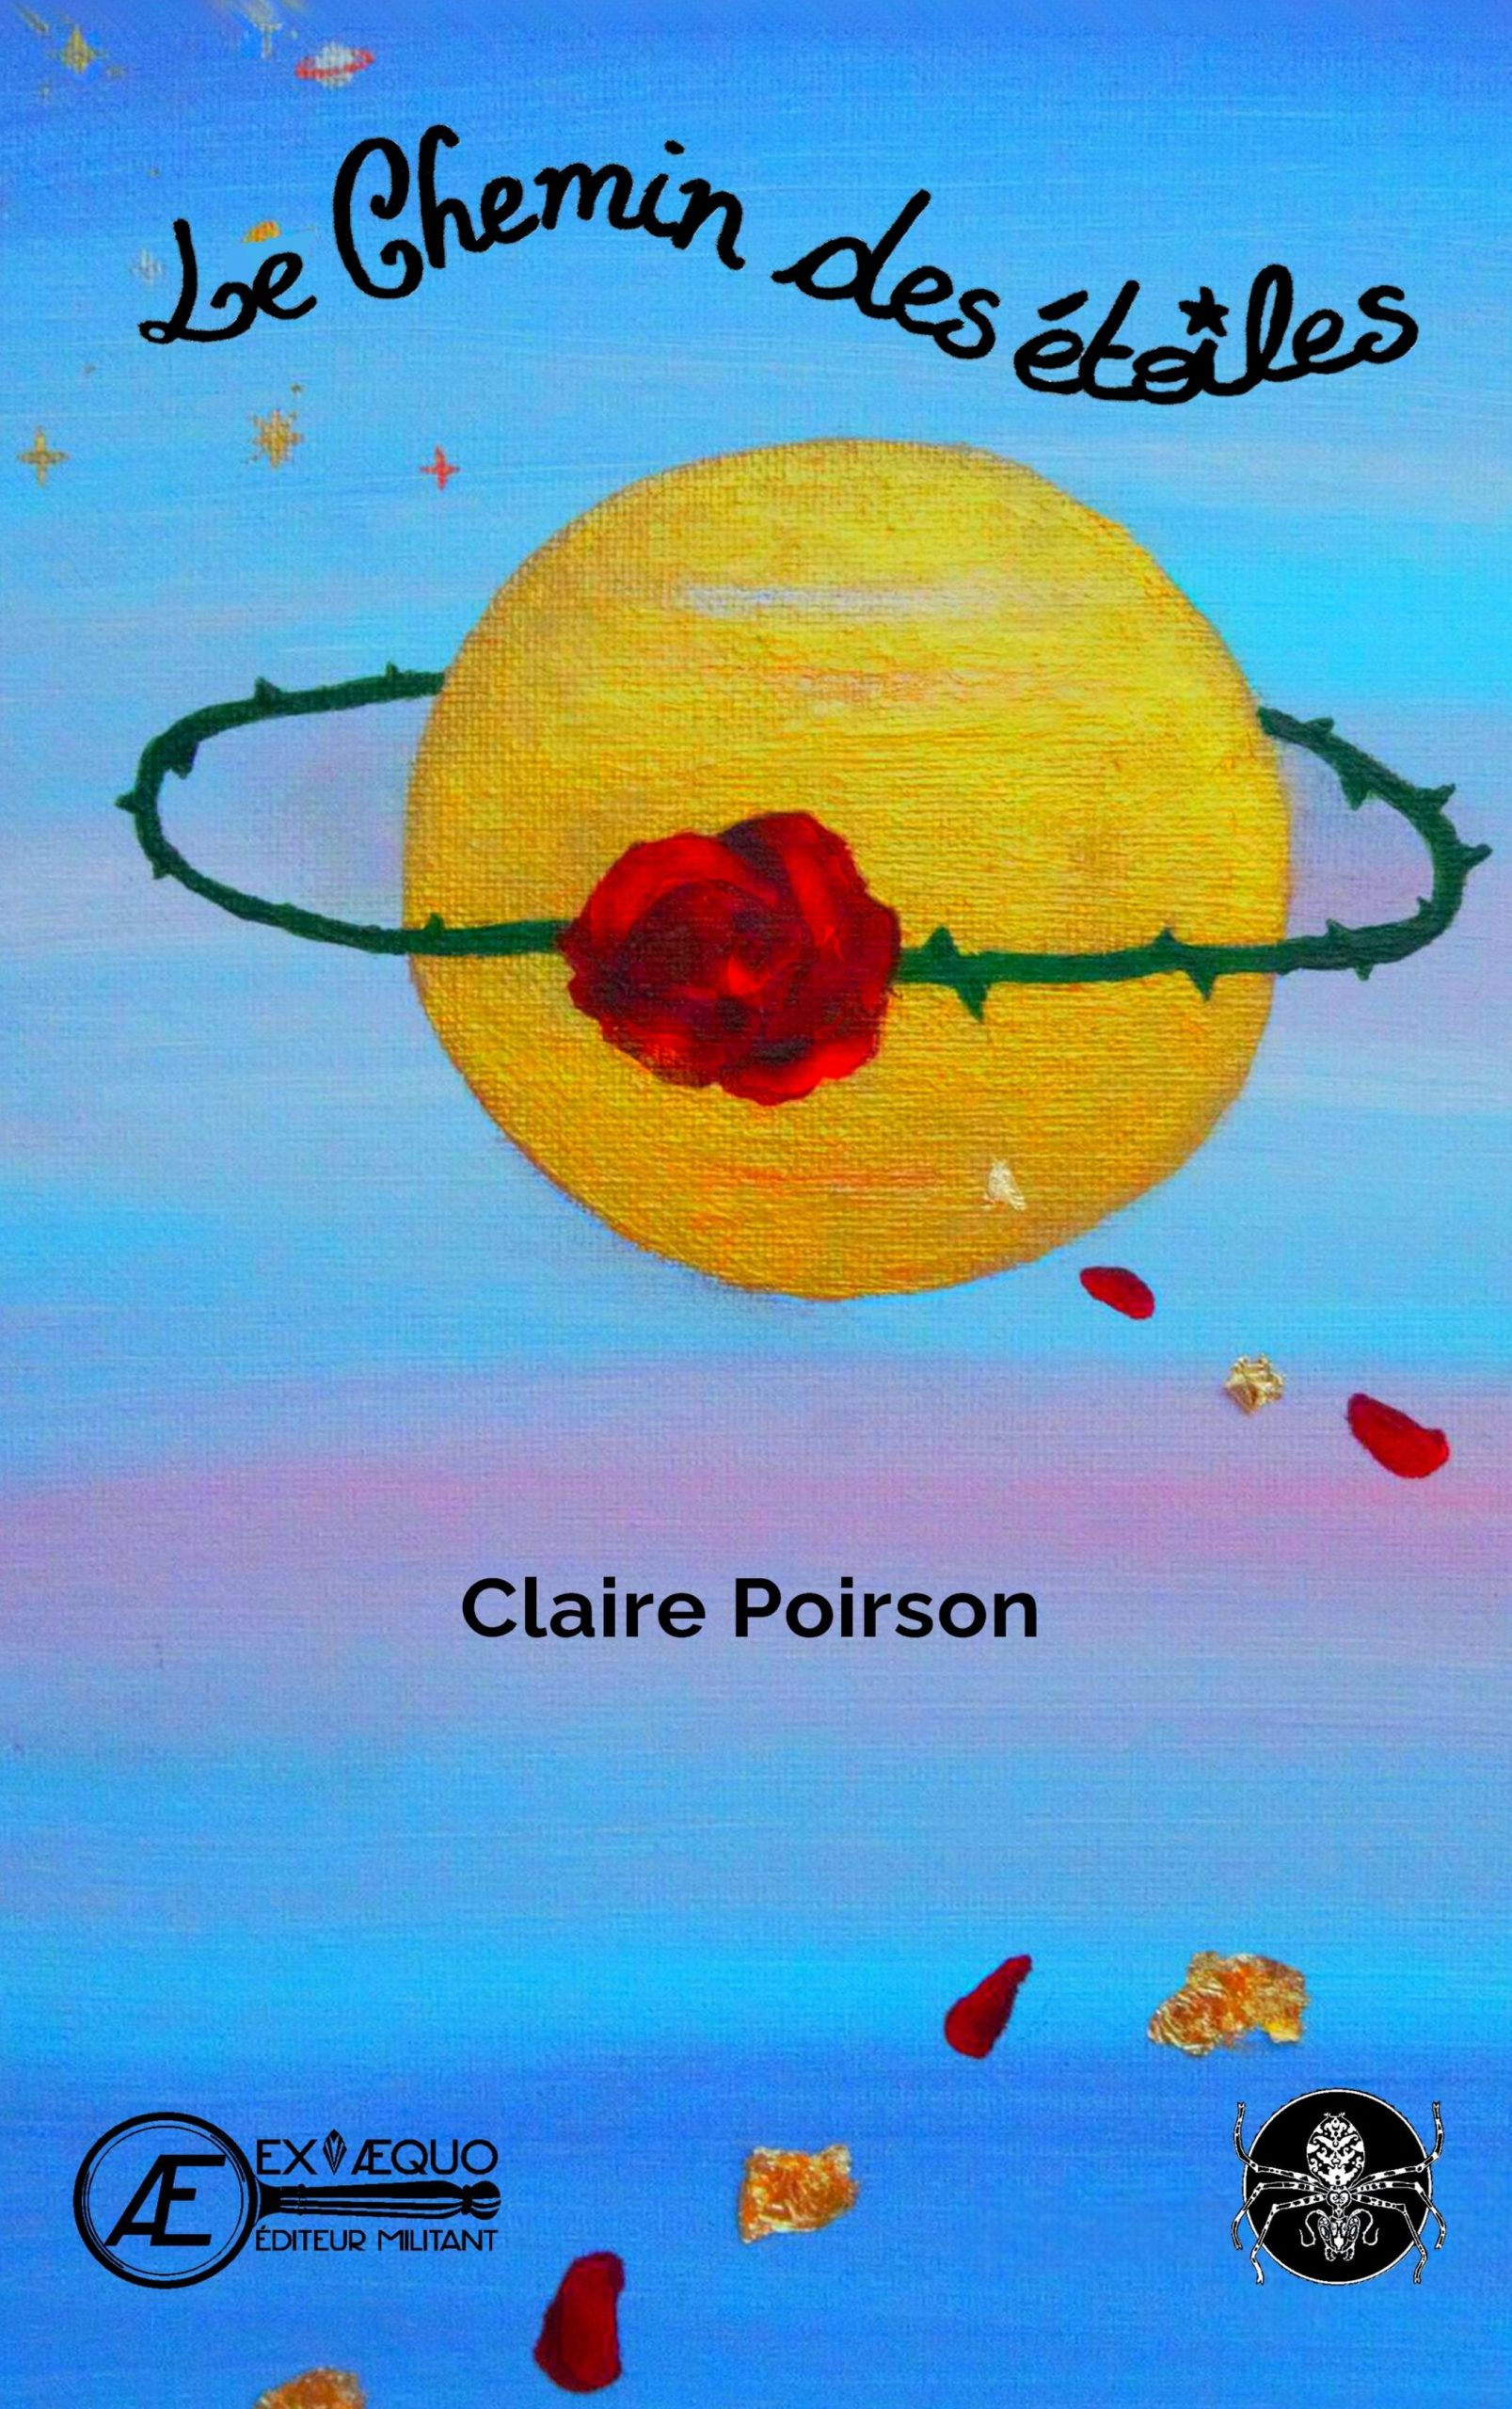 You are currently viewing Le chemin des étoiles, de Claire Poirson